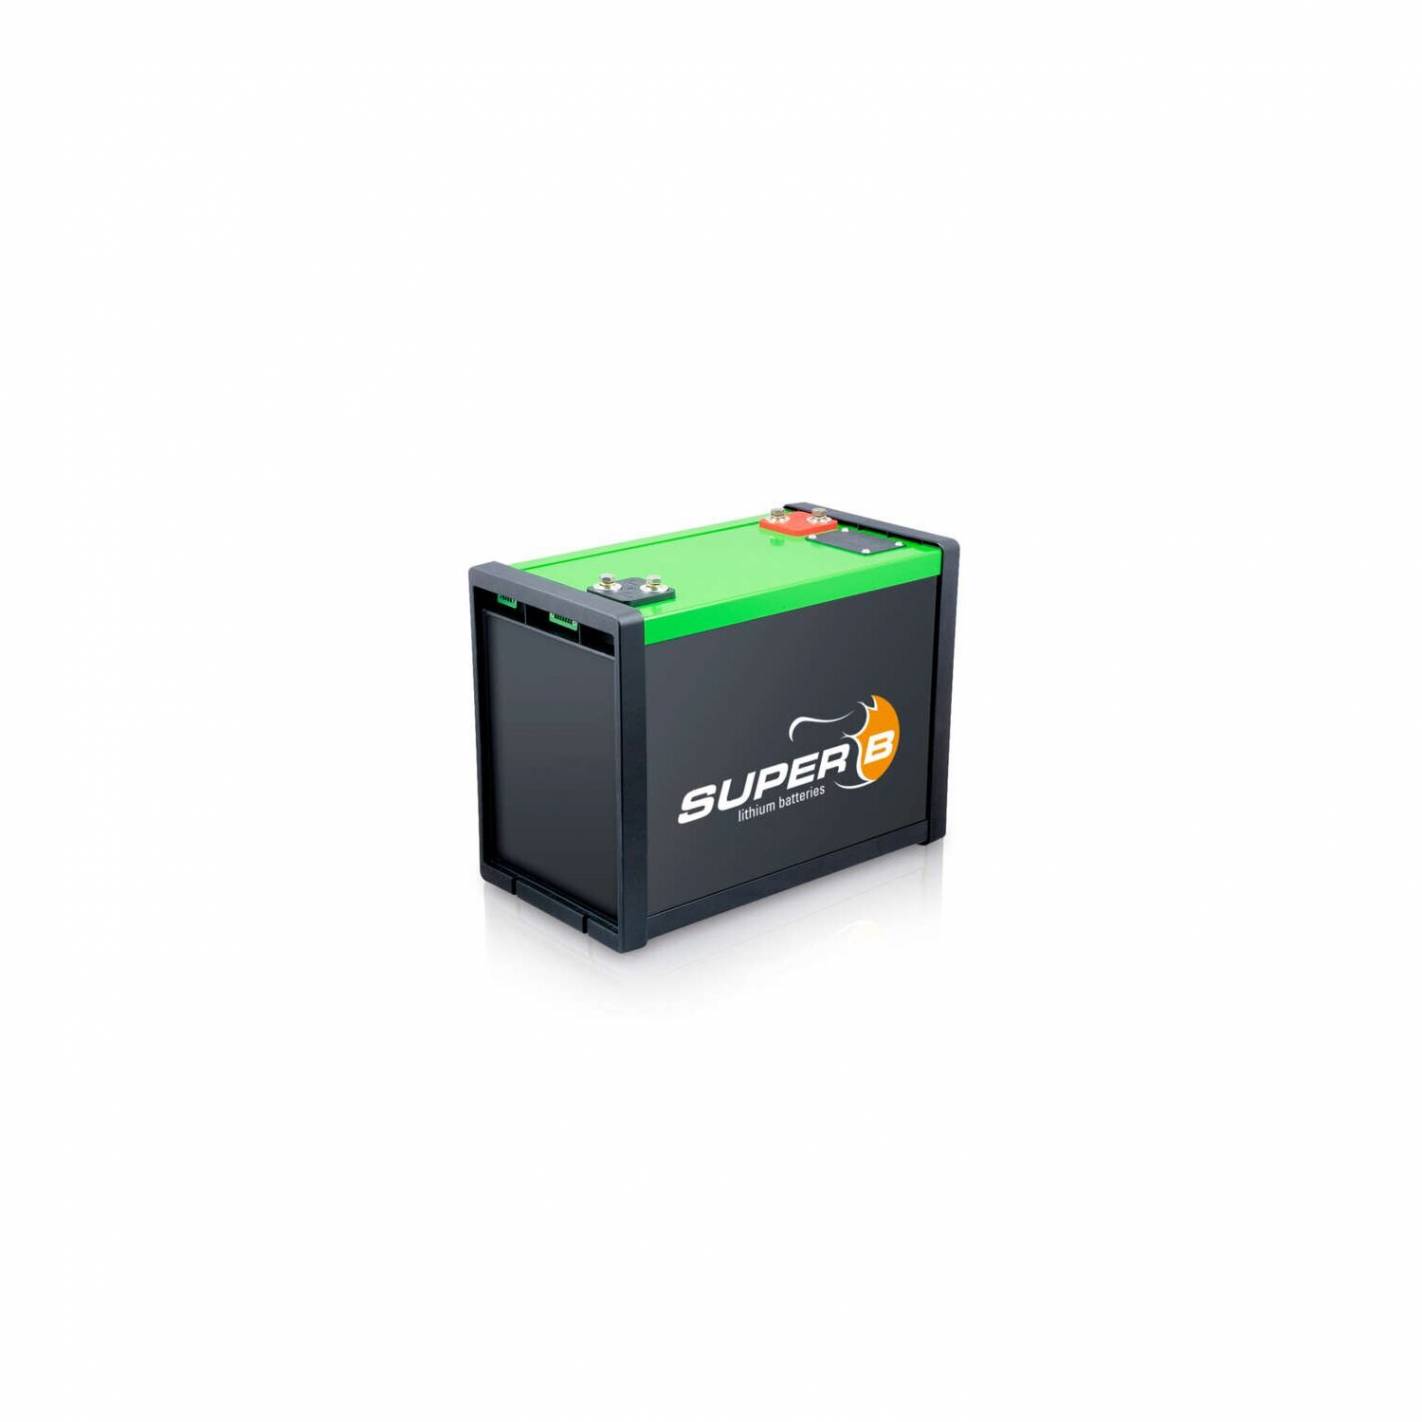 Lithium-Batterie speziell für Wohnmobil Super B RG-1Q11100